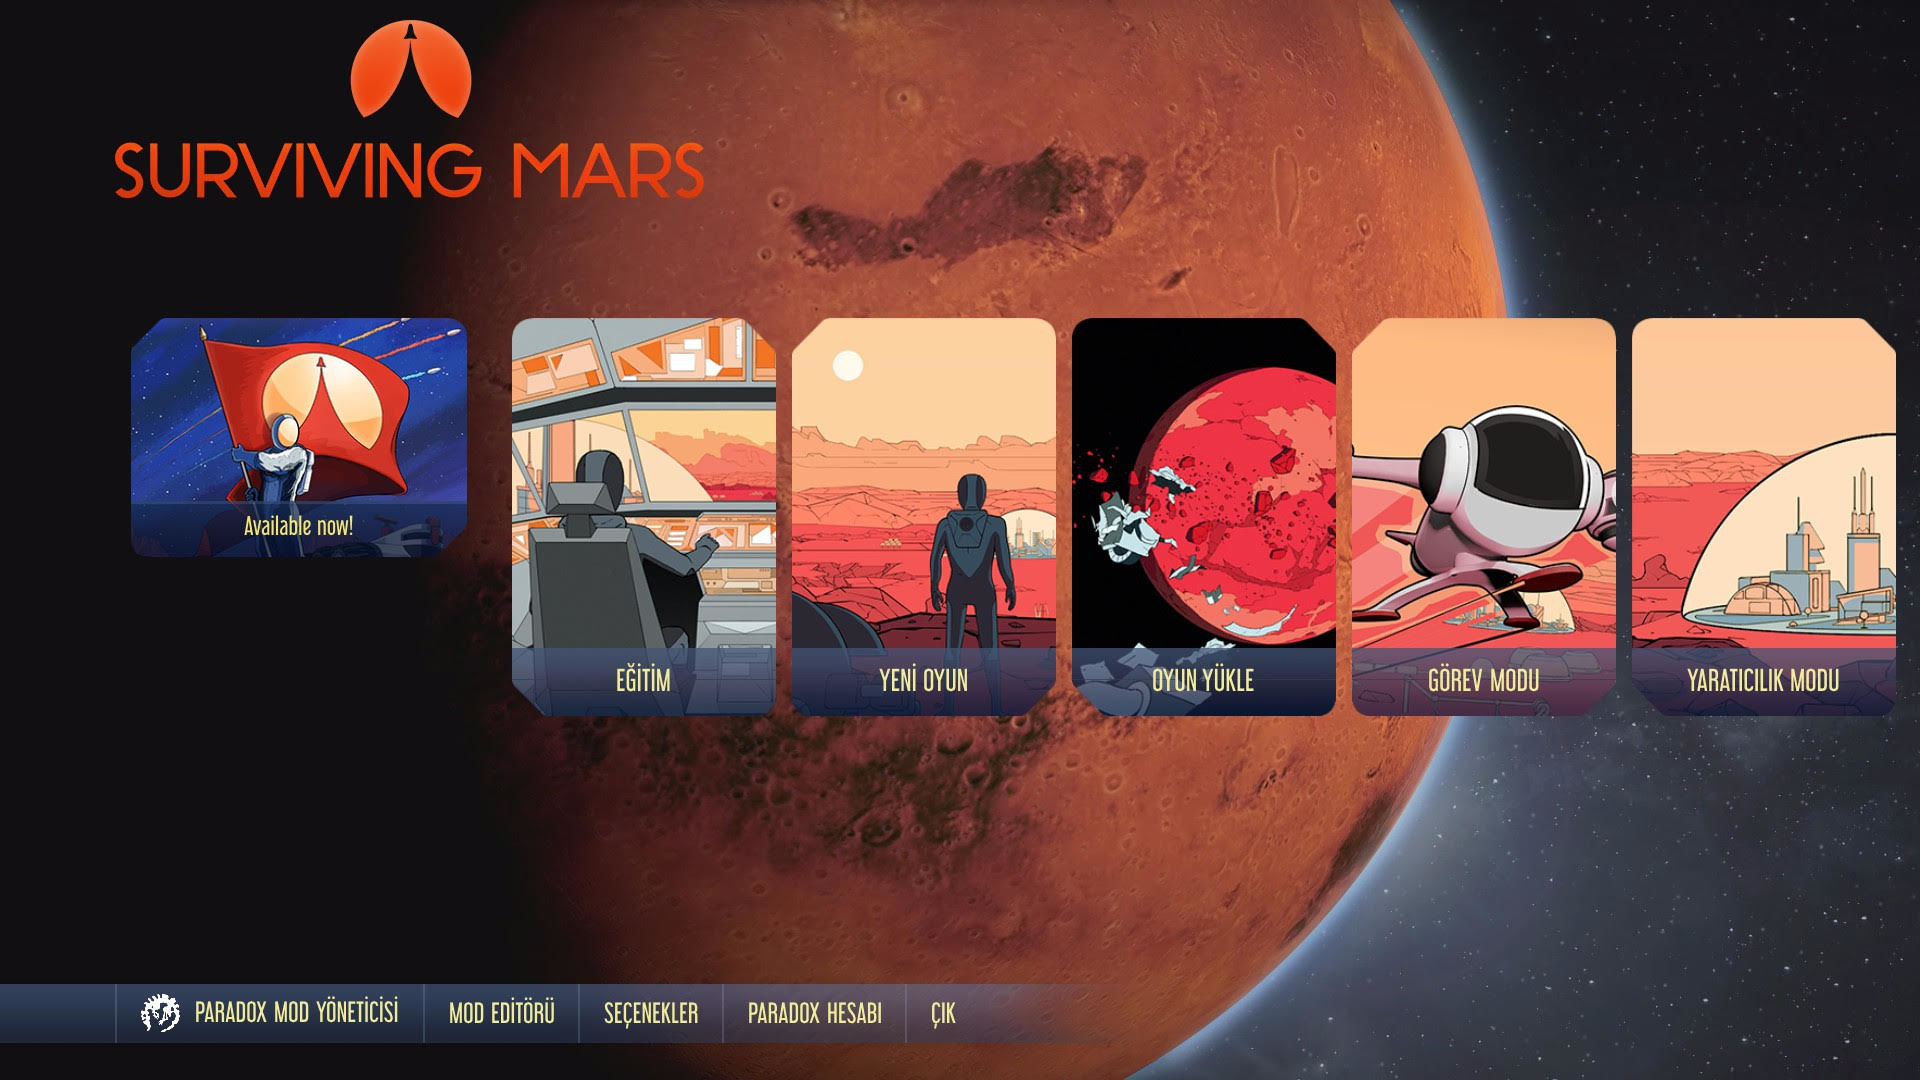 Surviving Mars Türkçe dil desteğine resmi olarak kavuştu